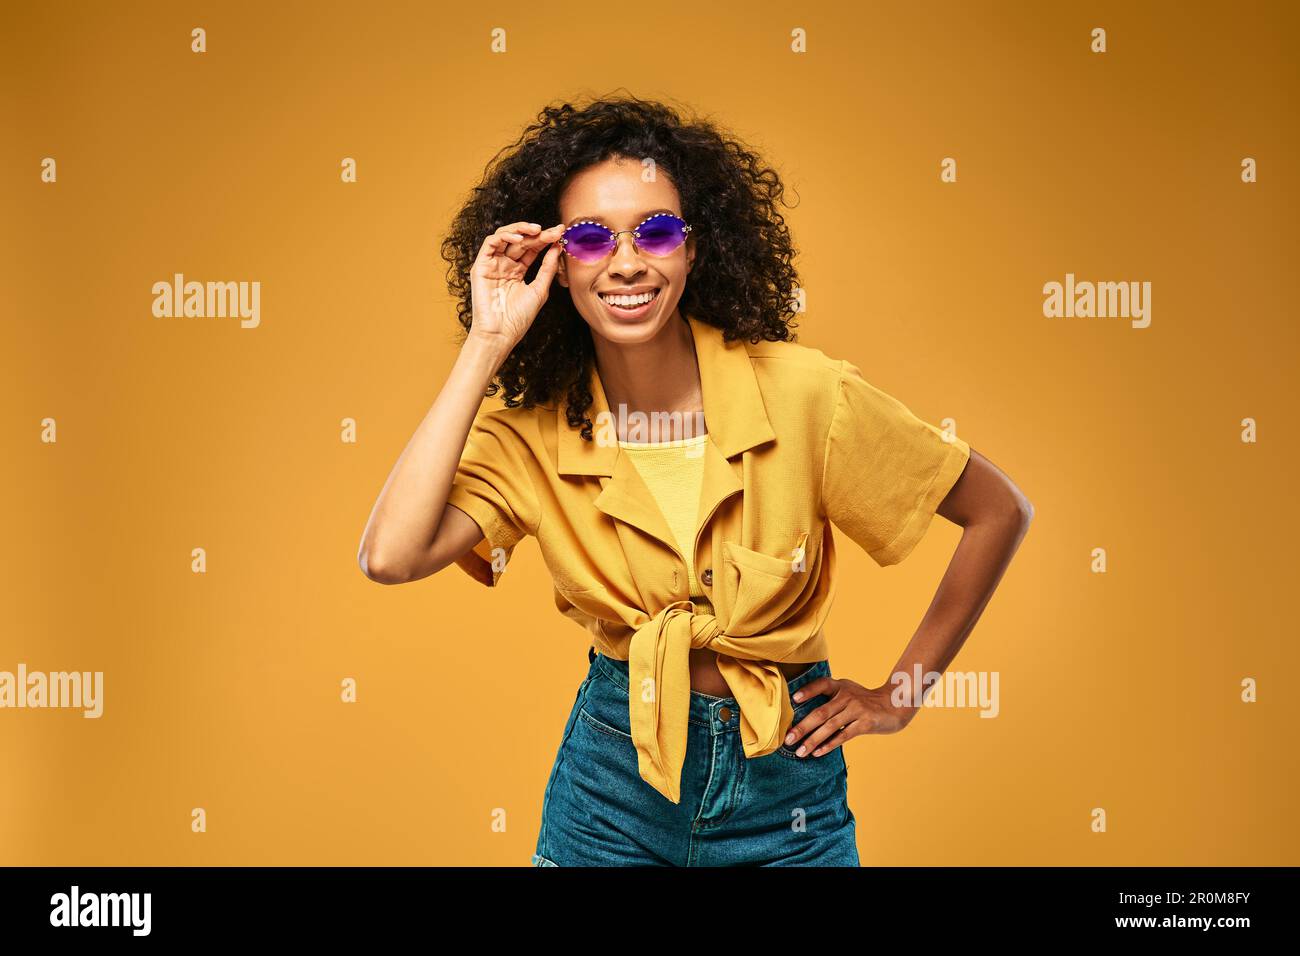 Ritratto estivo di giovane donna alla moda che indossa abiti alla moda e occhiali da sole in piedi su sfondo giallo in studio Foto Stock